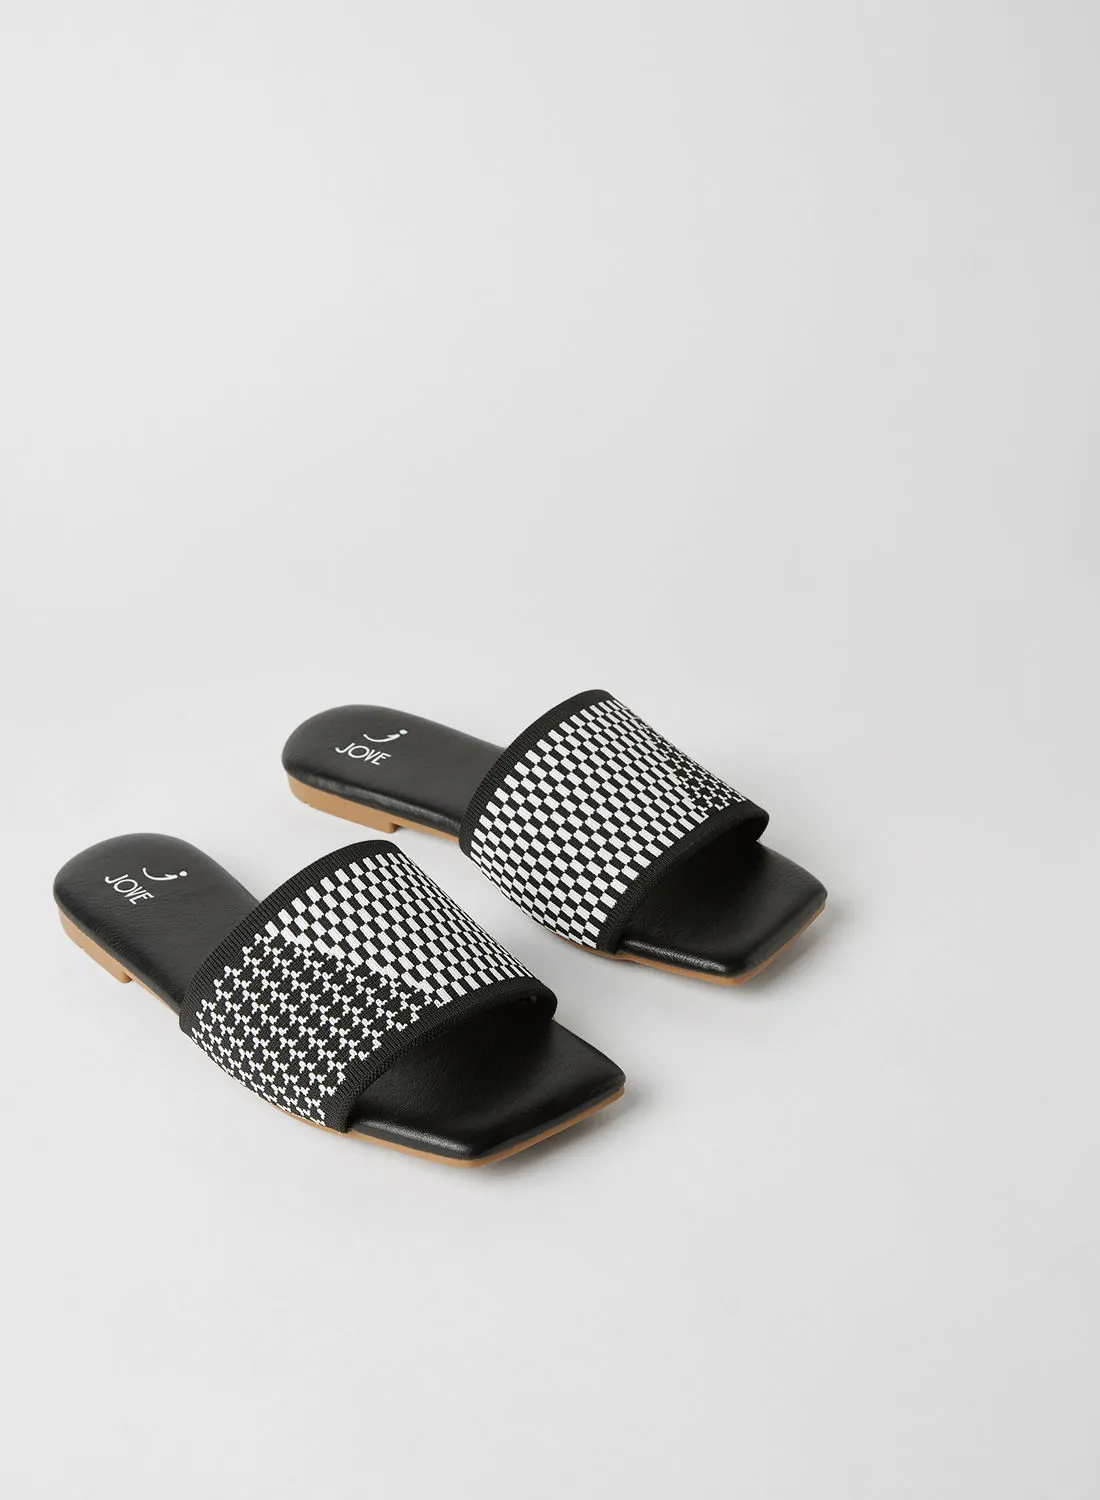 Jove Square Toe Slip-On Flat Sandals White/Black